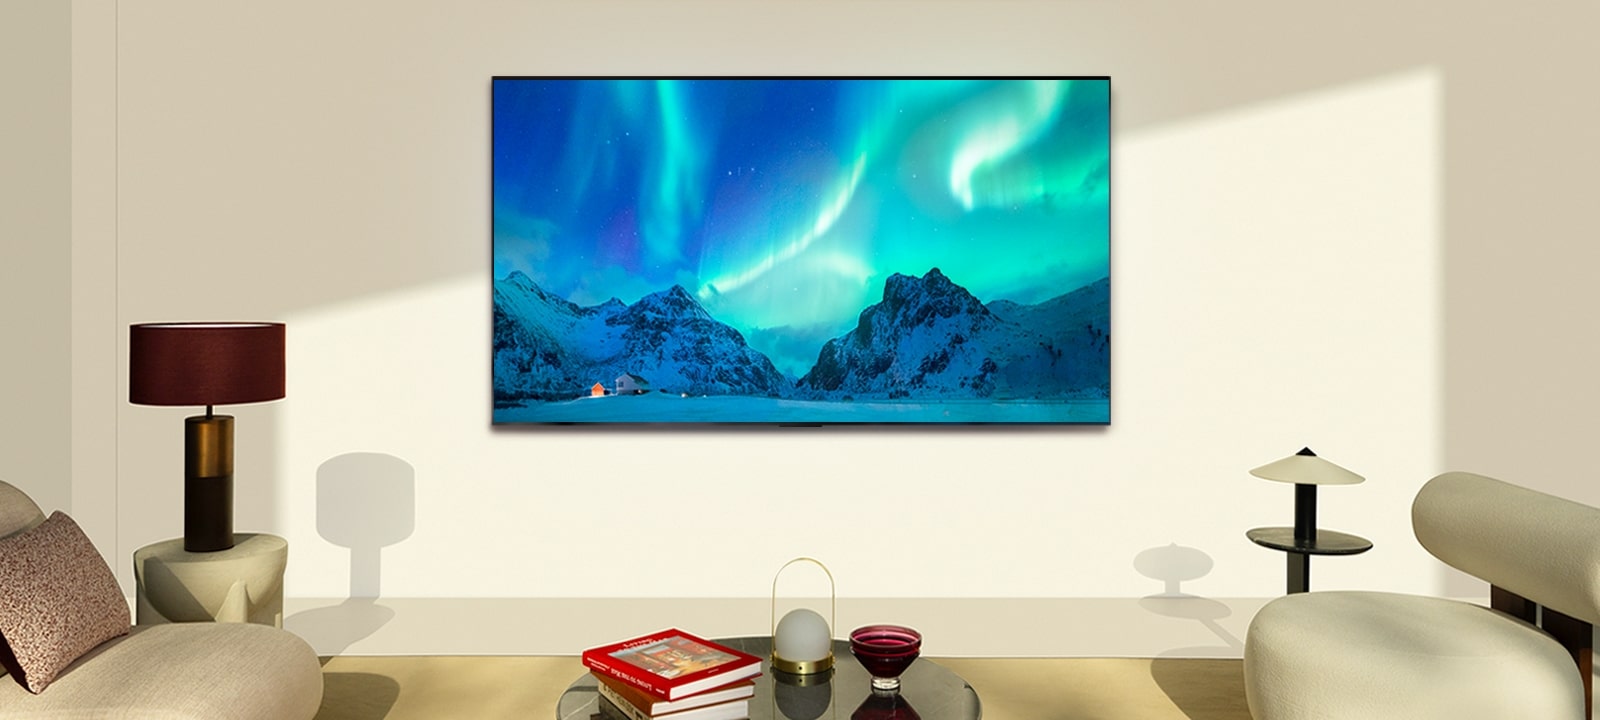 يظهر تلفزيون LG OLED TV في غرفة معيشة عصرية في وضح النهار. يتم عرض صورة الشفق القطبي على الشاشة بمستويات السطوع المثالية.